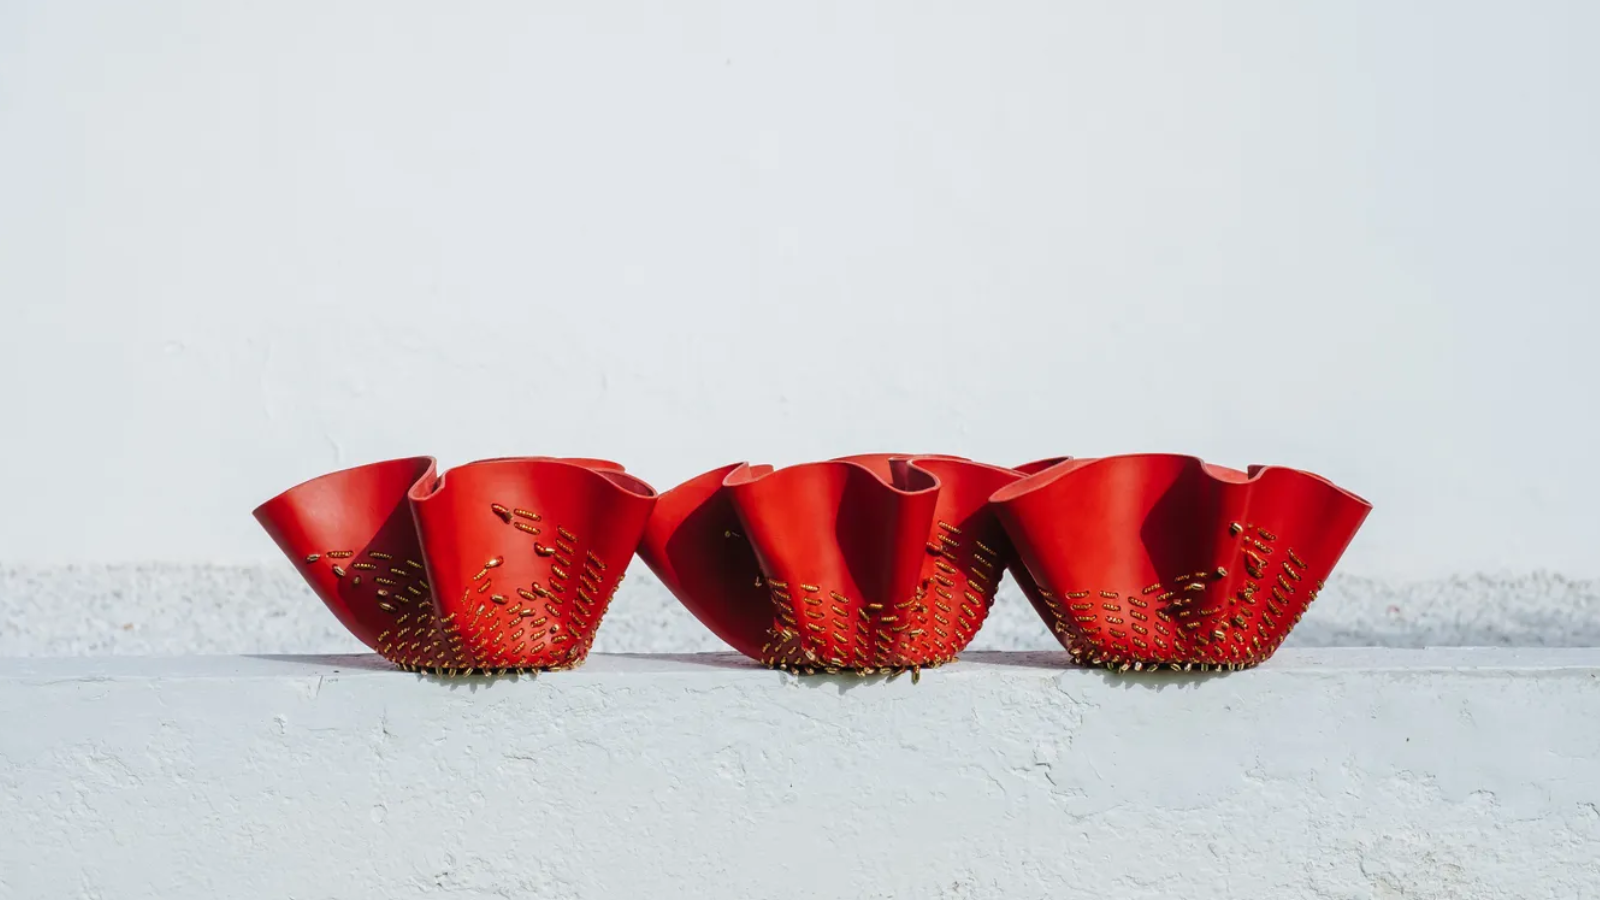 Fotografía de tres de los fruteros diseñados por Estudio Savage para Ciartier, con formas onduladas y color rojo intenso